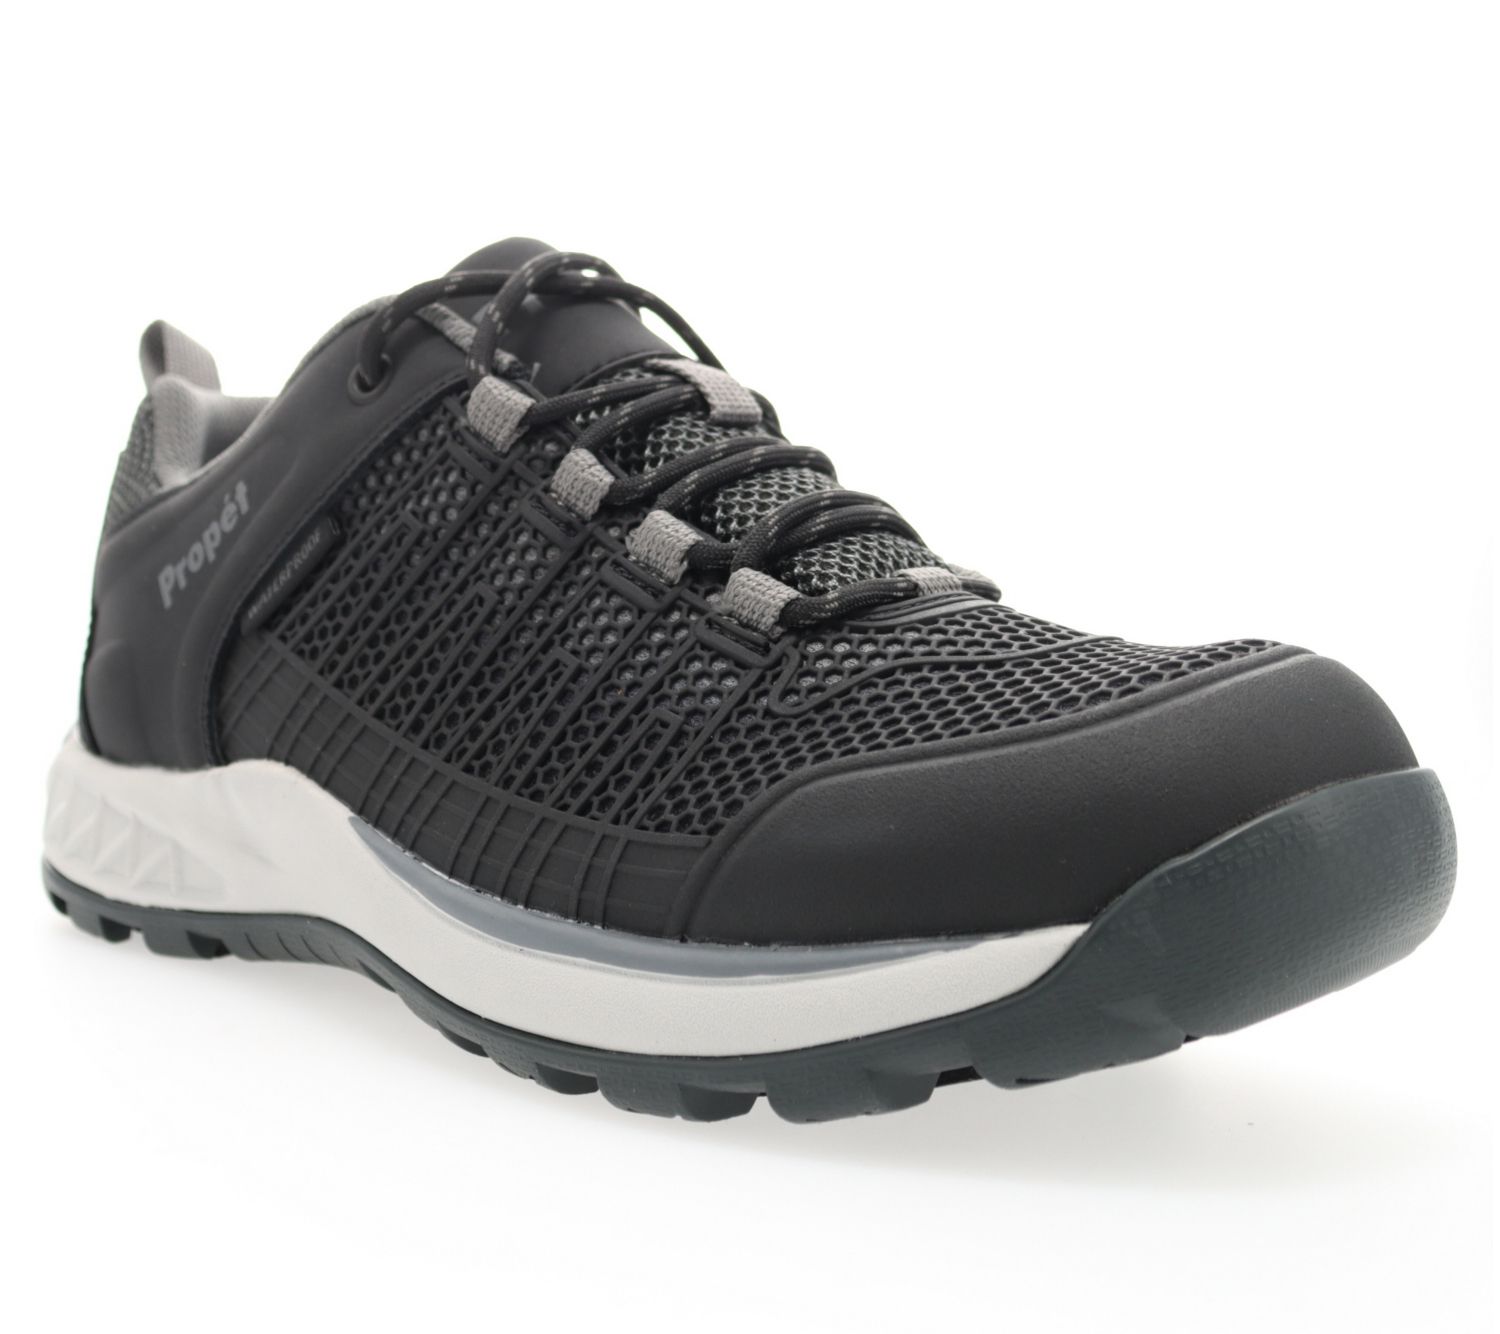 Propet Men's Vestrio Hiking Shoes - QVC.com